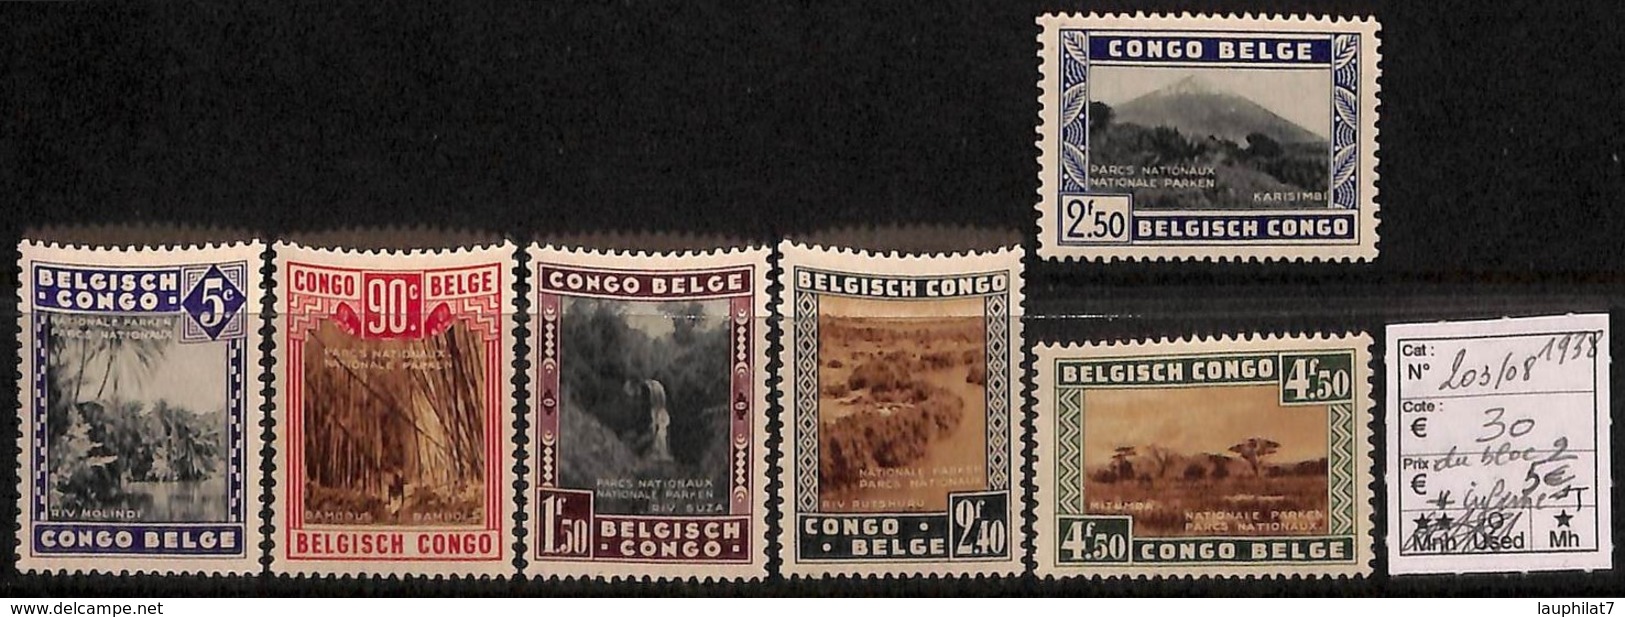 [814487]TB//*/Mh-c:30e-Congo Belge        1938 - N° 203/08, Parcs Nationaux, Paysages, SC, */mh Légère - Nuovi